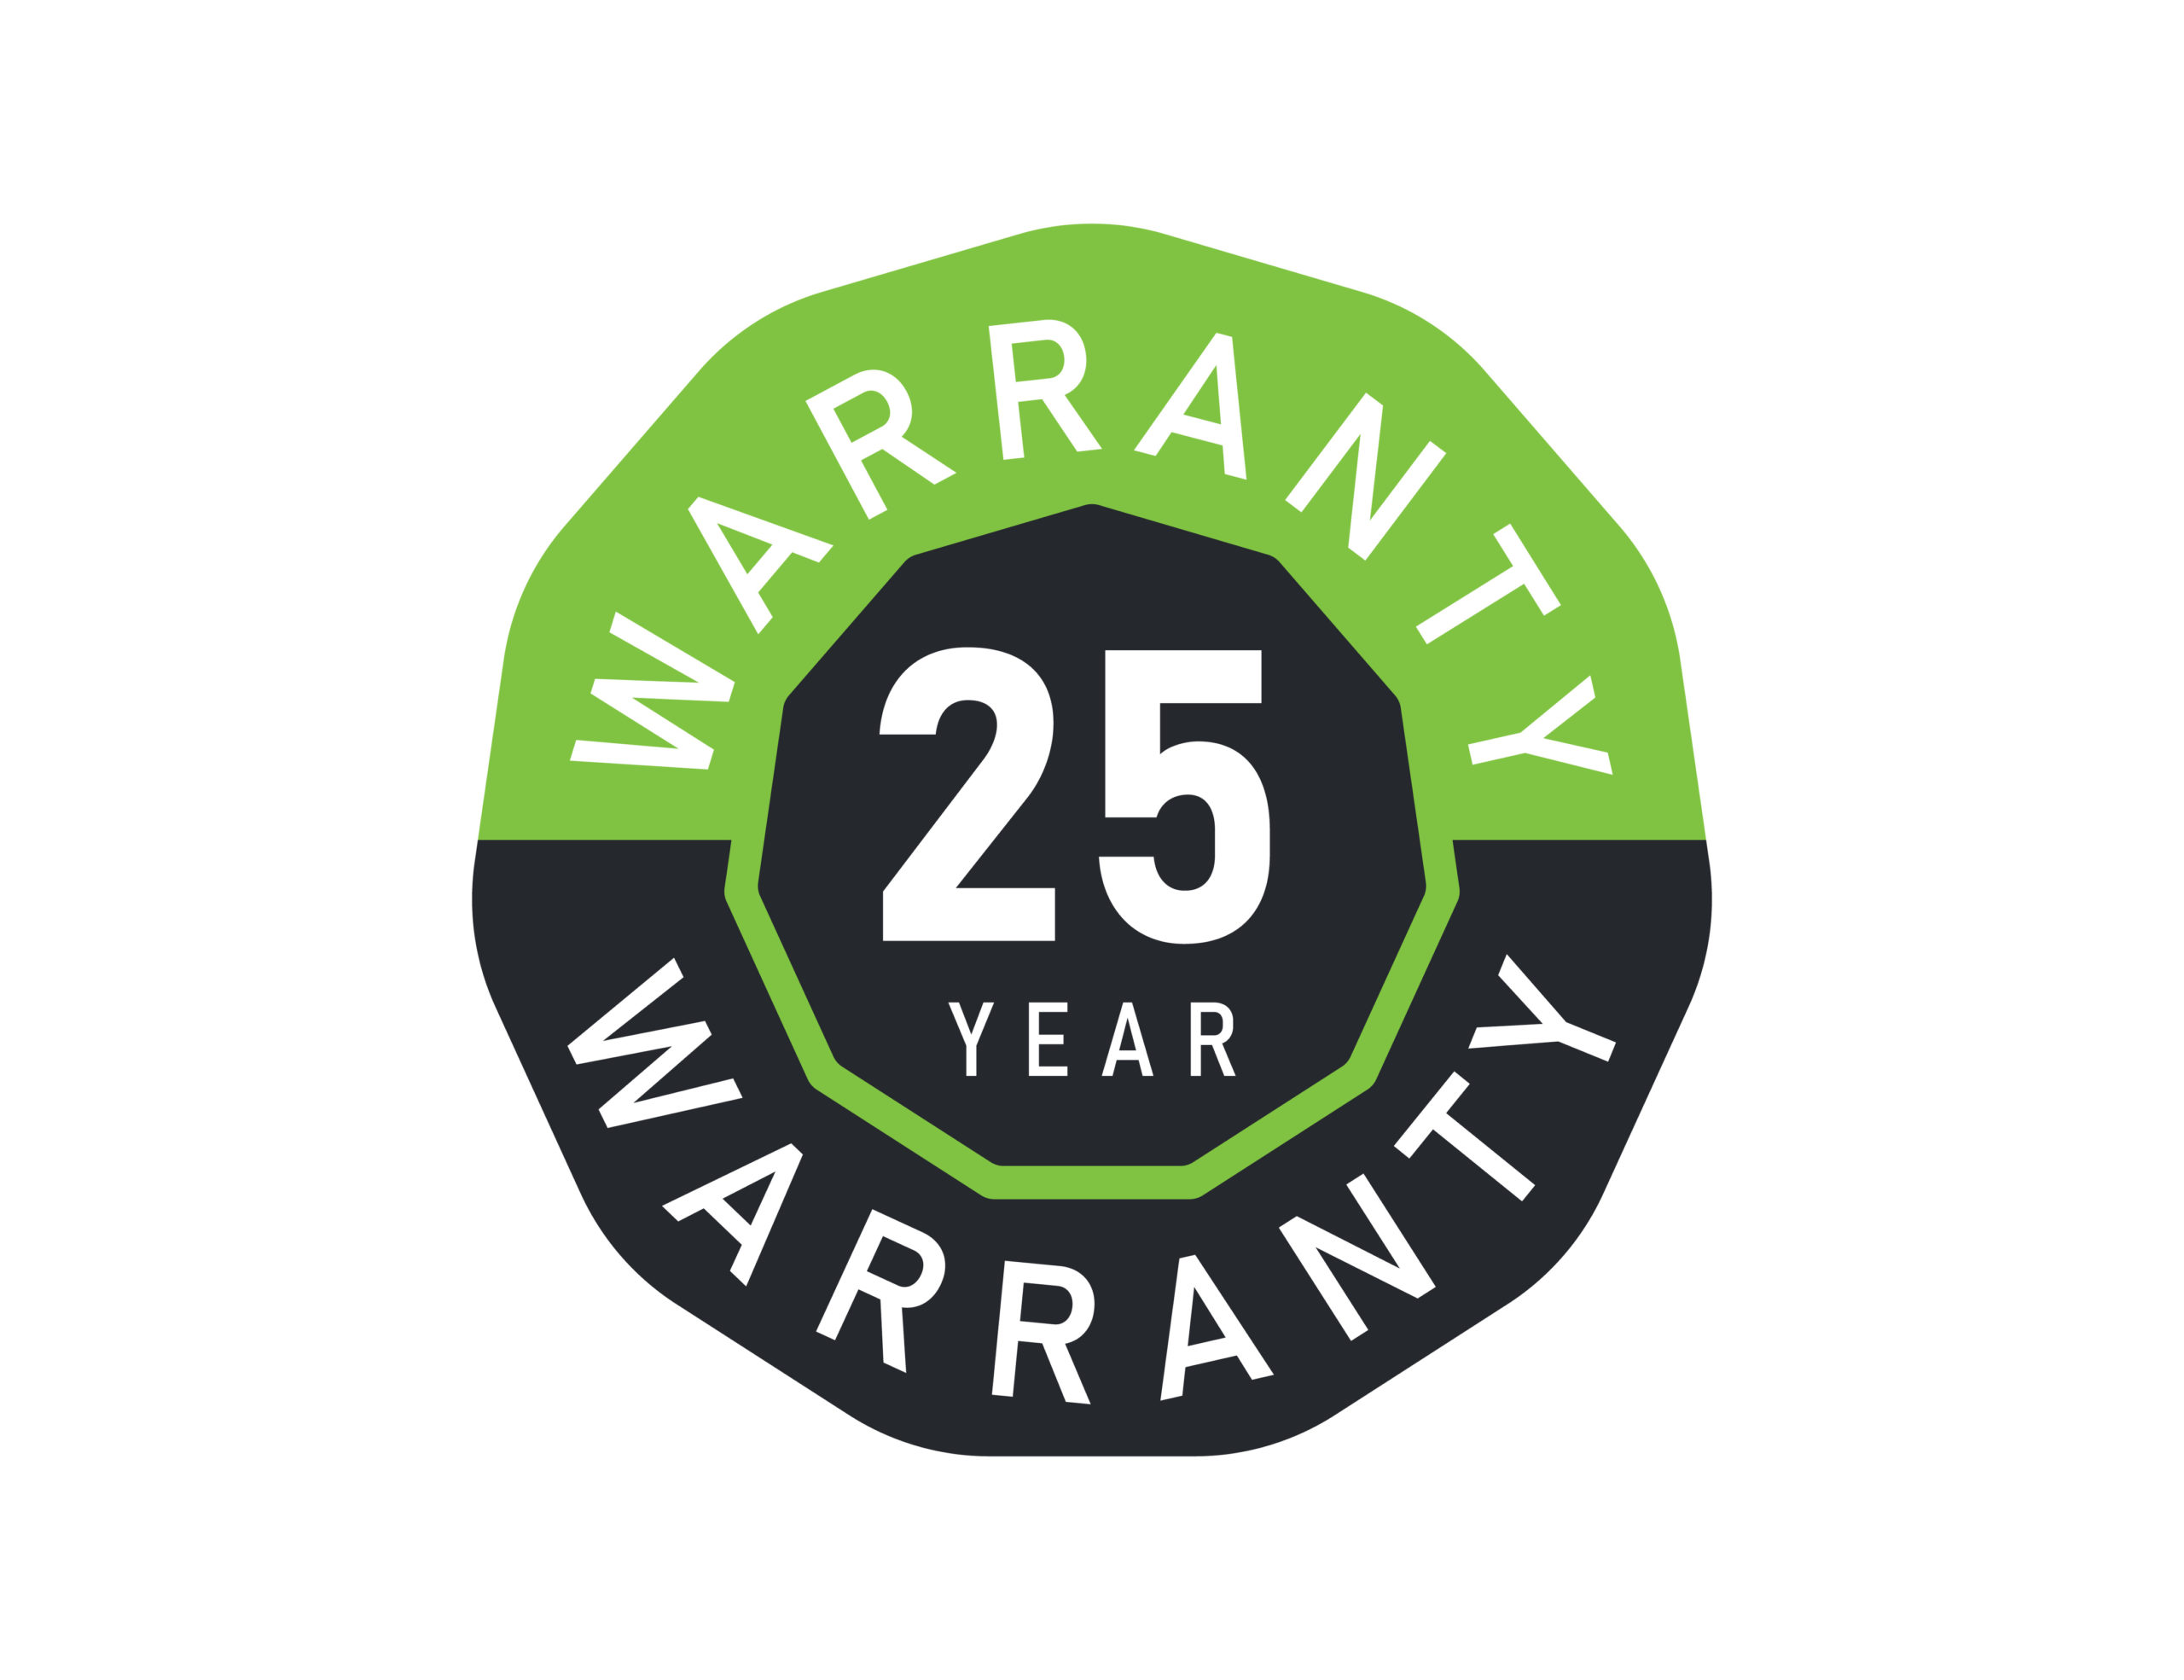 25 year warranty guarantee badge